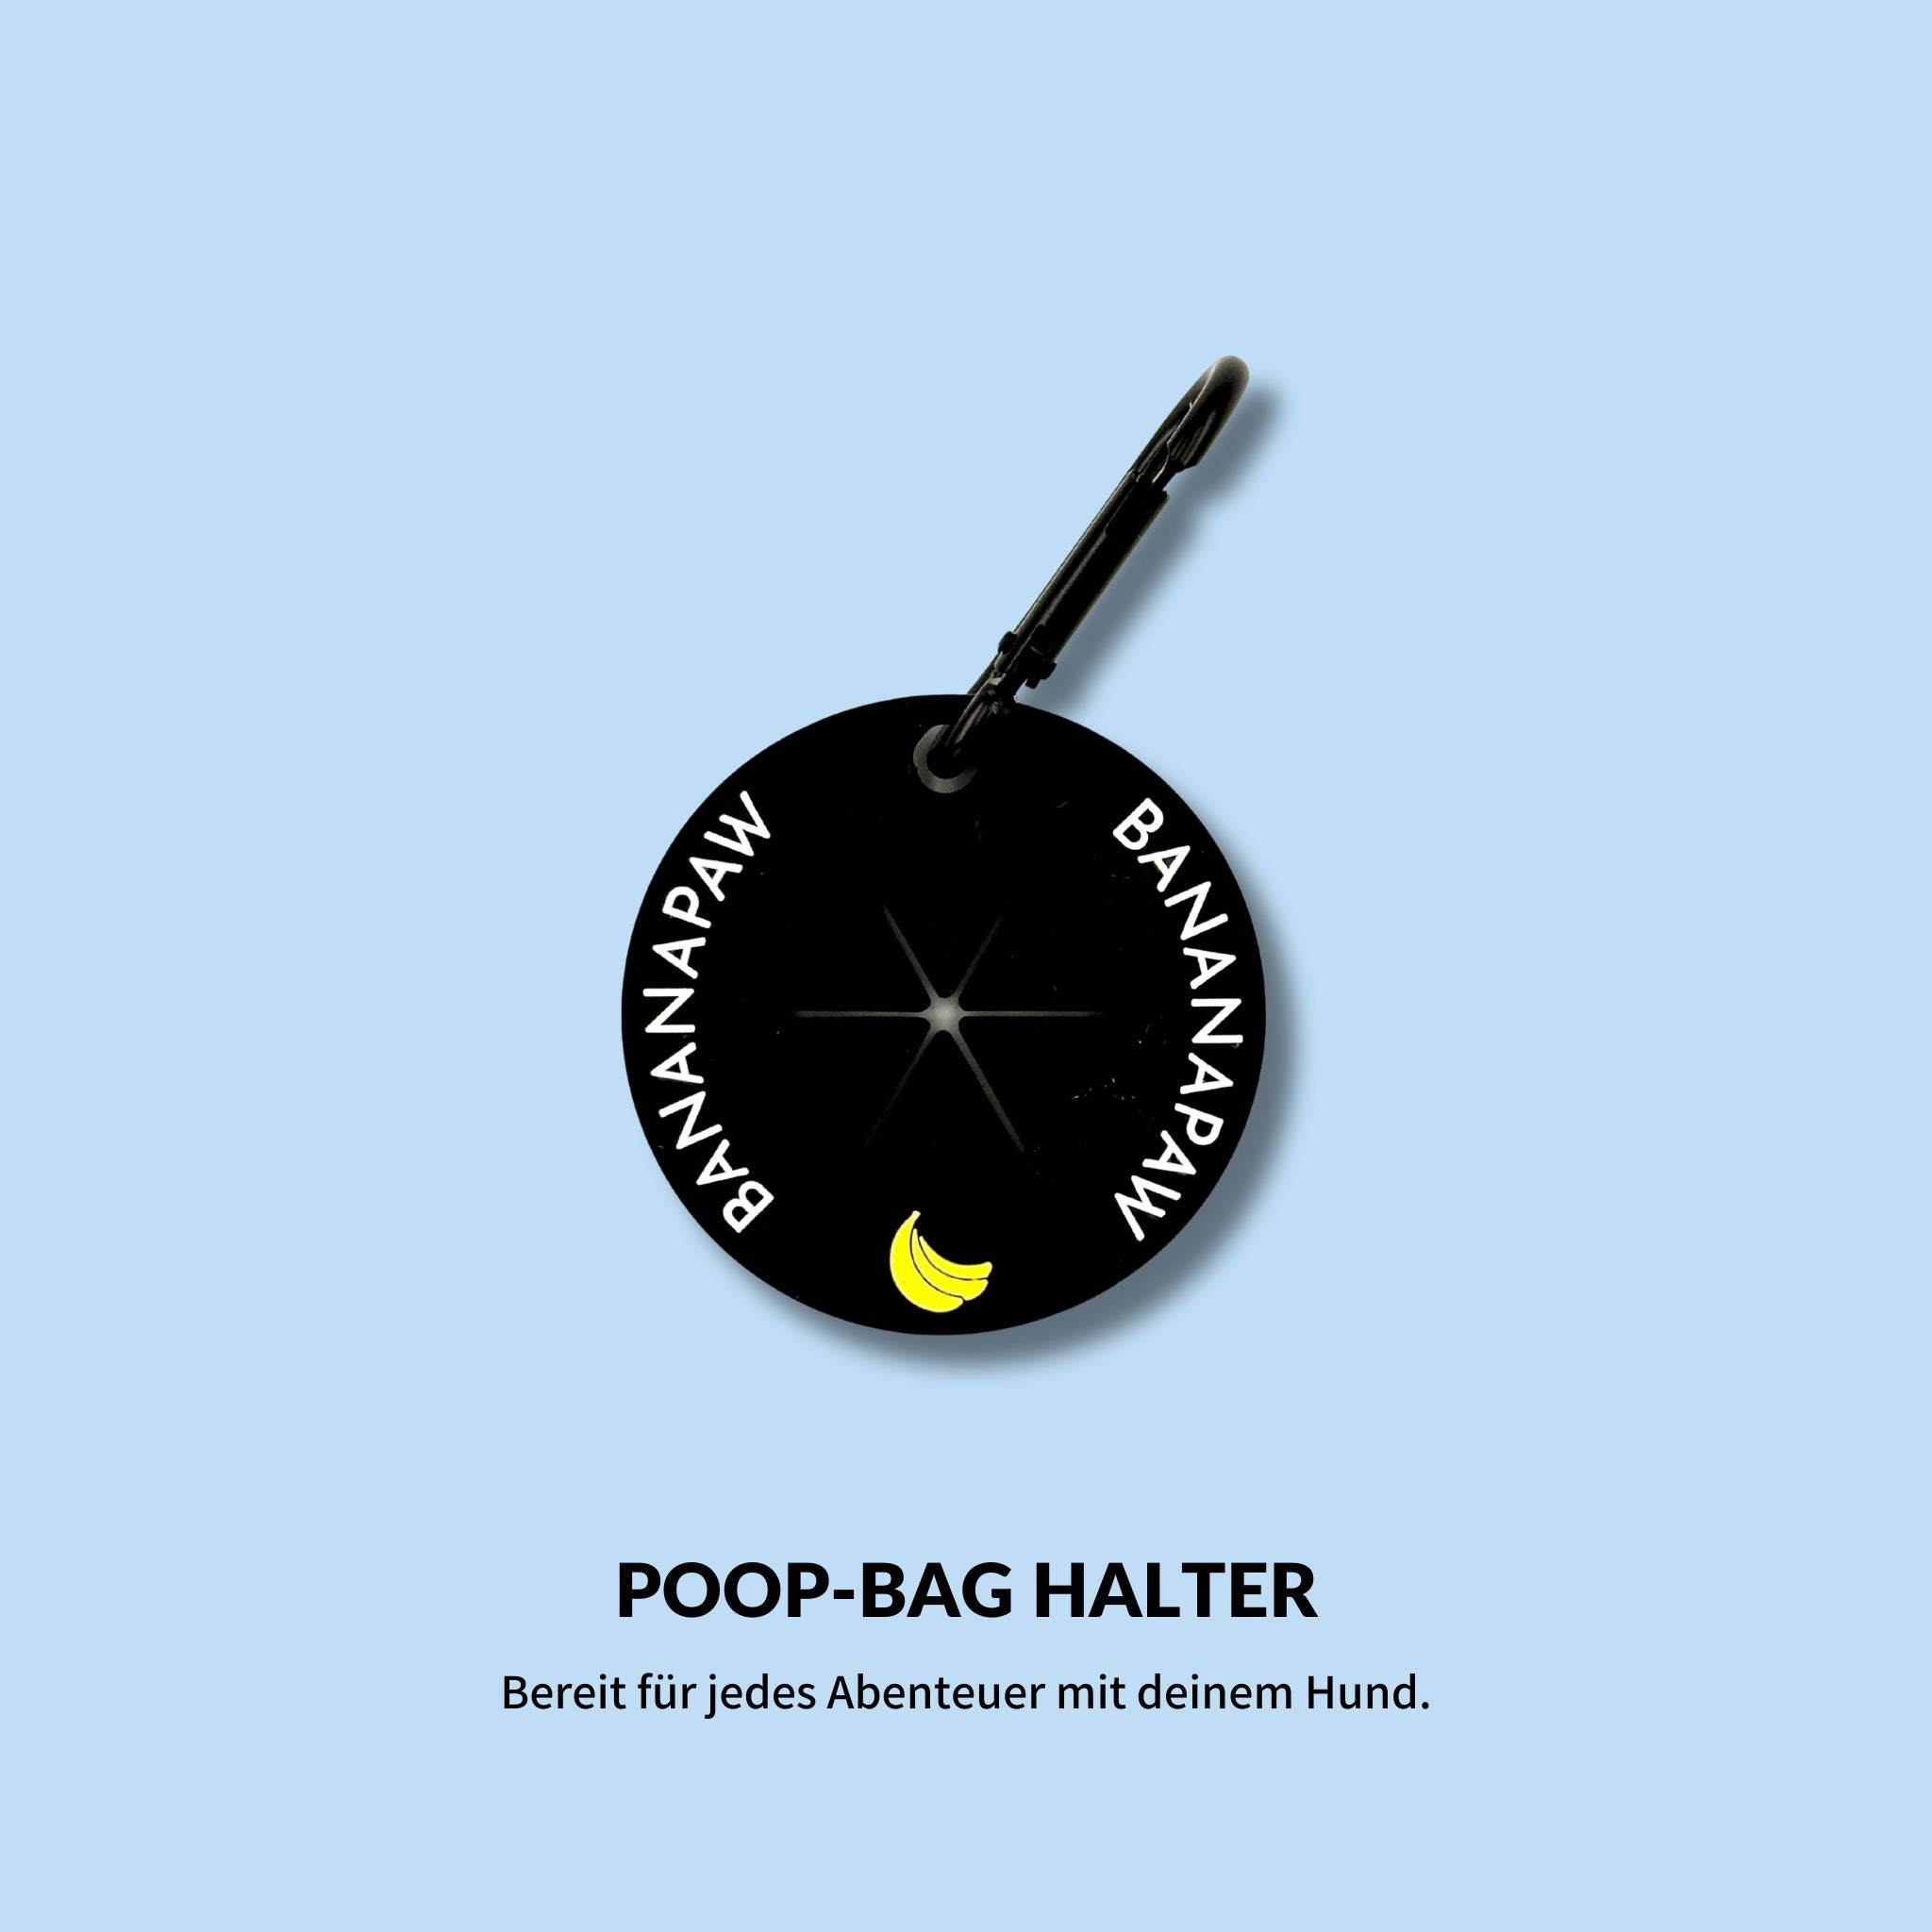 Poop-Bag Halter